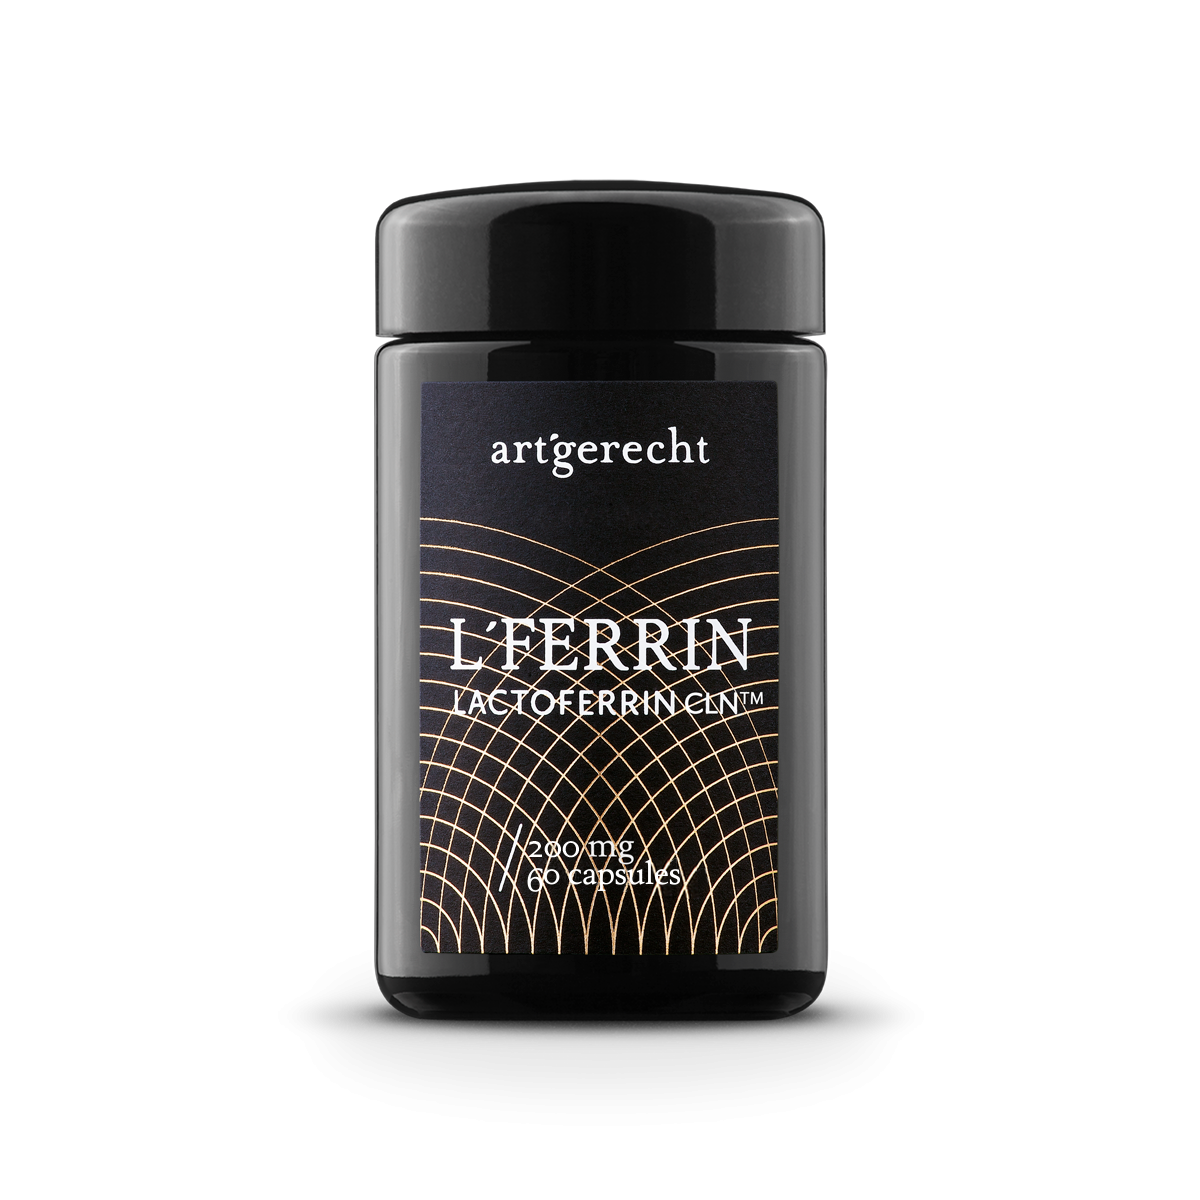 L’FERRIN - Reines Lactoferrin CLN® - 60 Kapseln